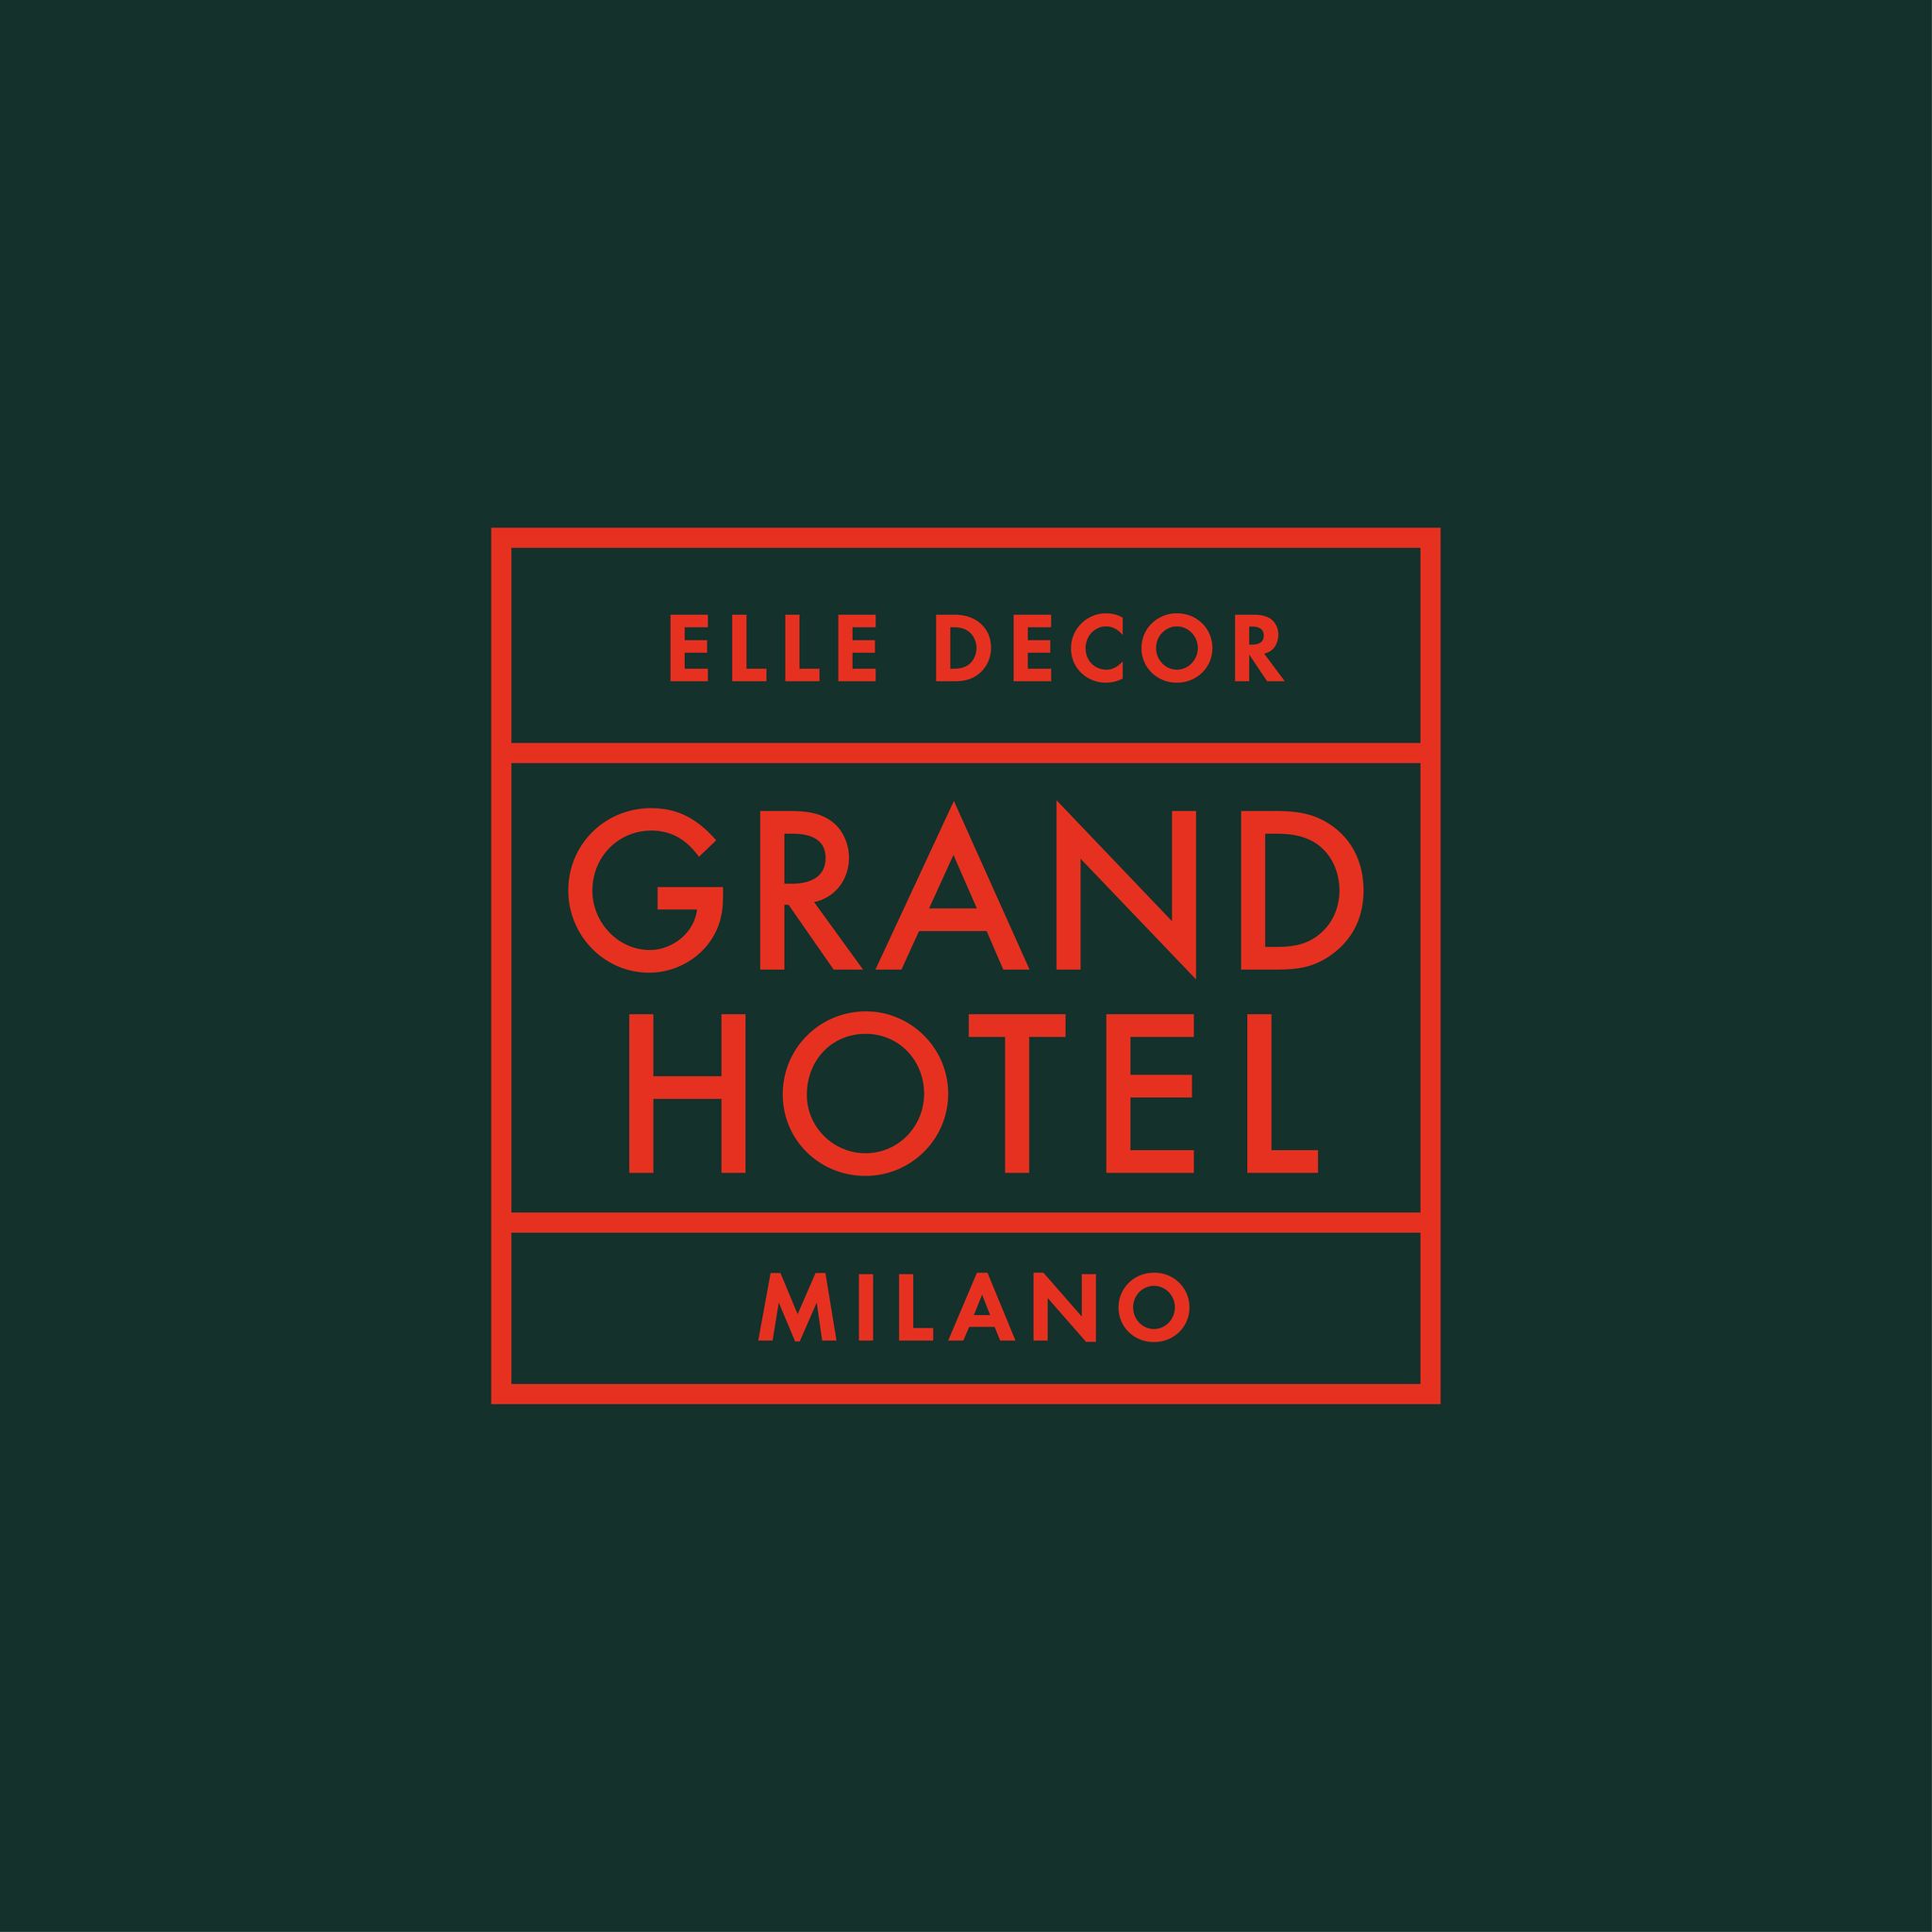 Elle Decor Grand Hotel Milano, Elle Decor, Elle Decor Grand Hotel, Invisible Rooms, Neri&Hu, Lyndon Neri, Rossana Hu, Palazzo Morando, Milano, ottobre 2018, ottobre a milano